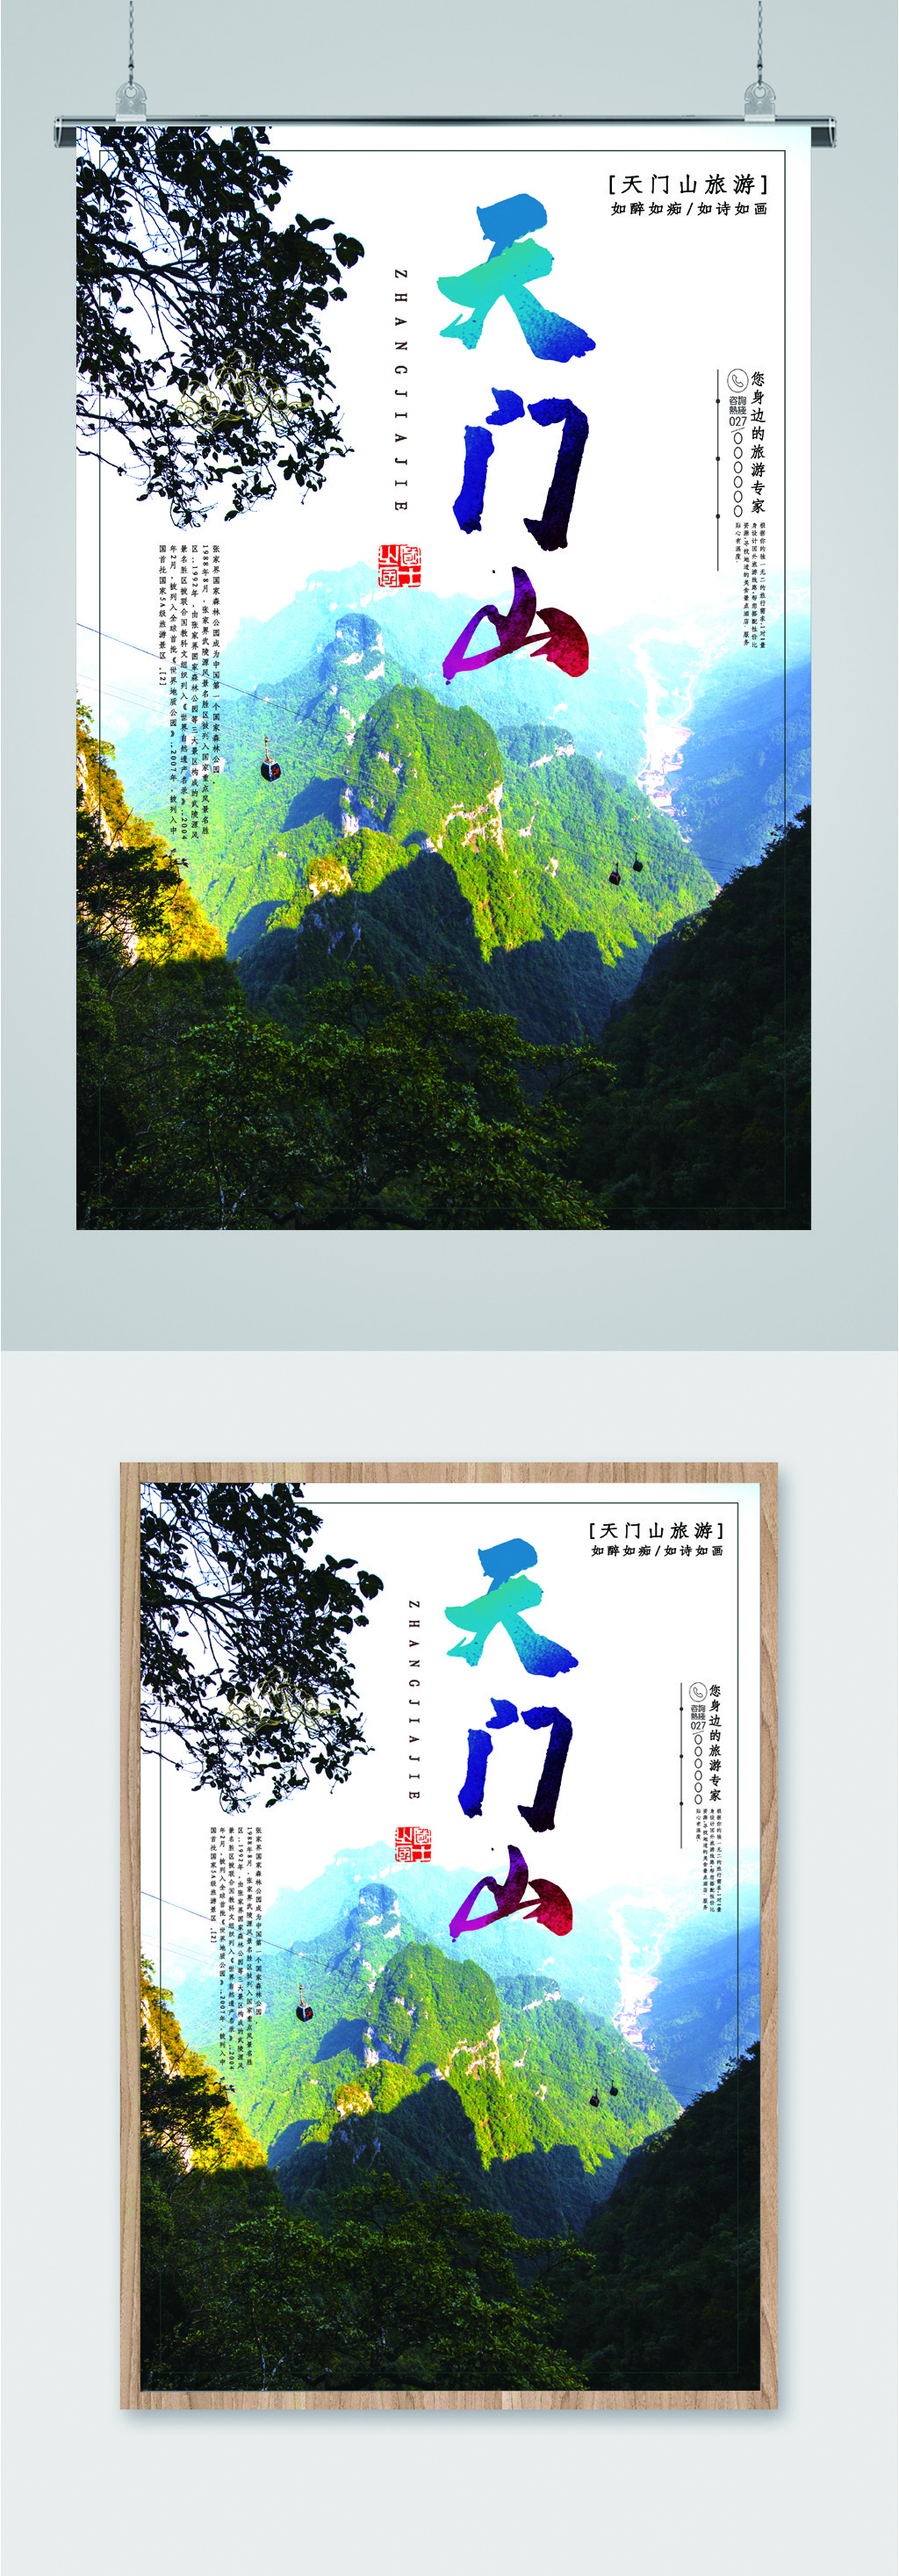 山风景旅游海报素材免费下载,本作品是由图图上传的原创平面广告素材